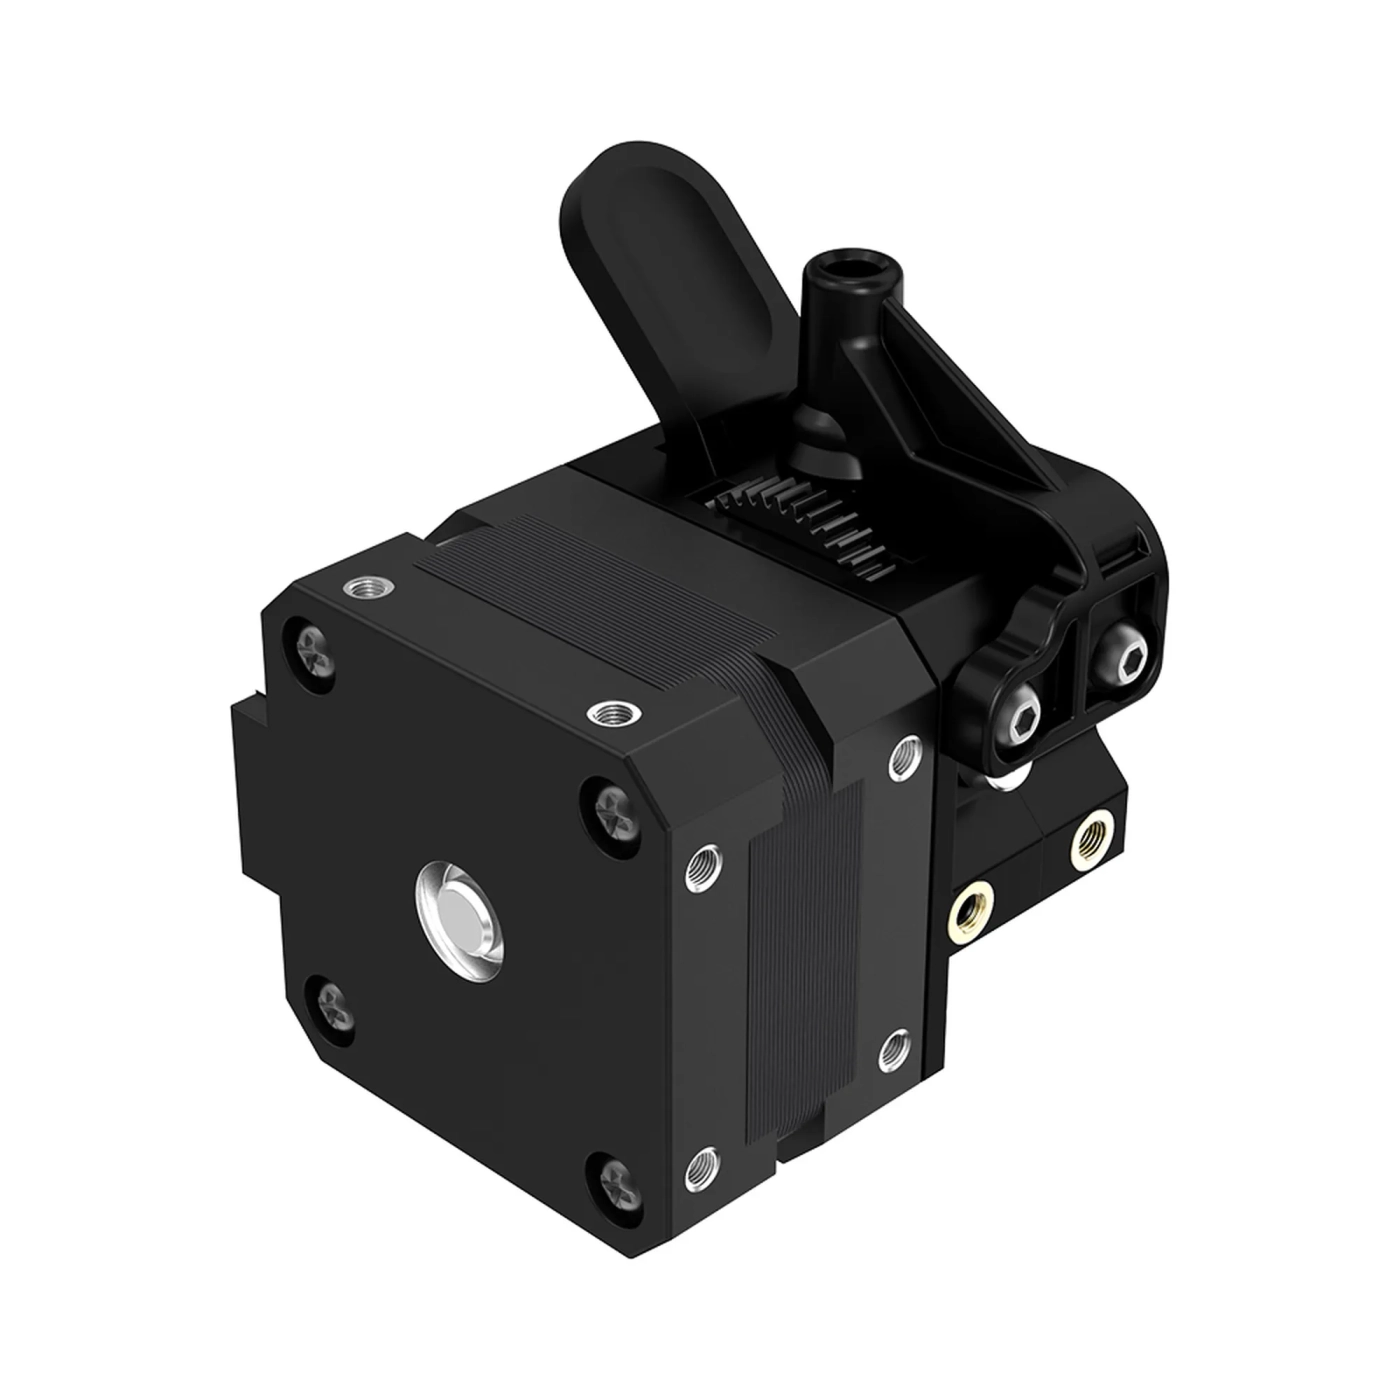 Купить Экструзионный механизм CREALITY Sprite SE для апгрейда 3D принтера Ender-3/Ender-3 V2/Ender-3 Pro - фото 1